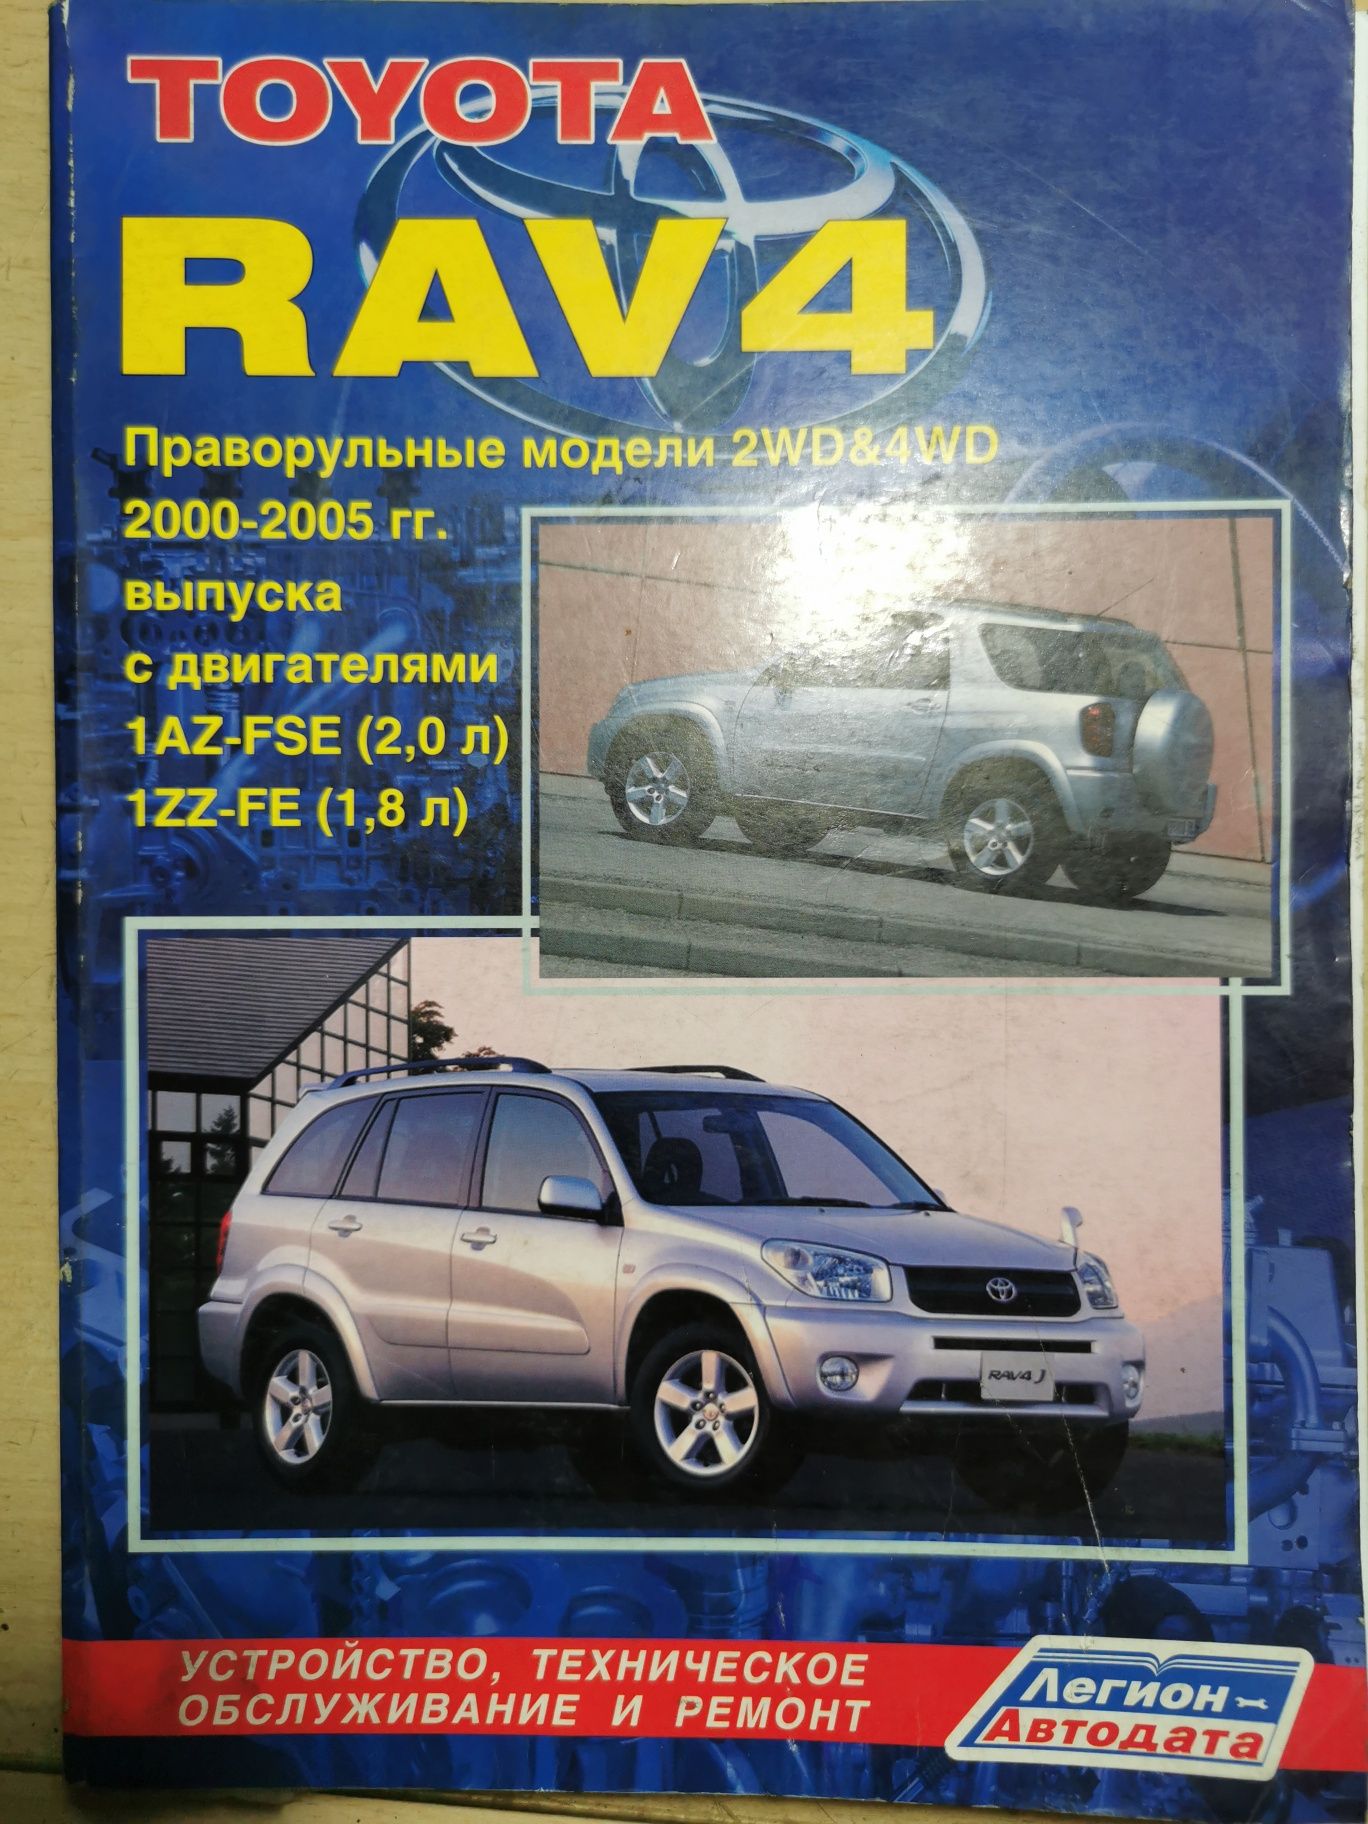 Обслуживание и ремонт Toyota RAV 4 в сервисных центрах Ровелс: перечень услуг